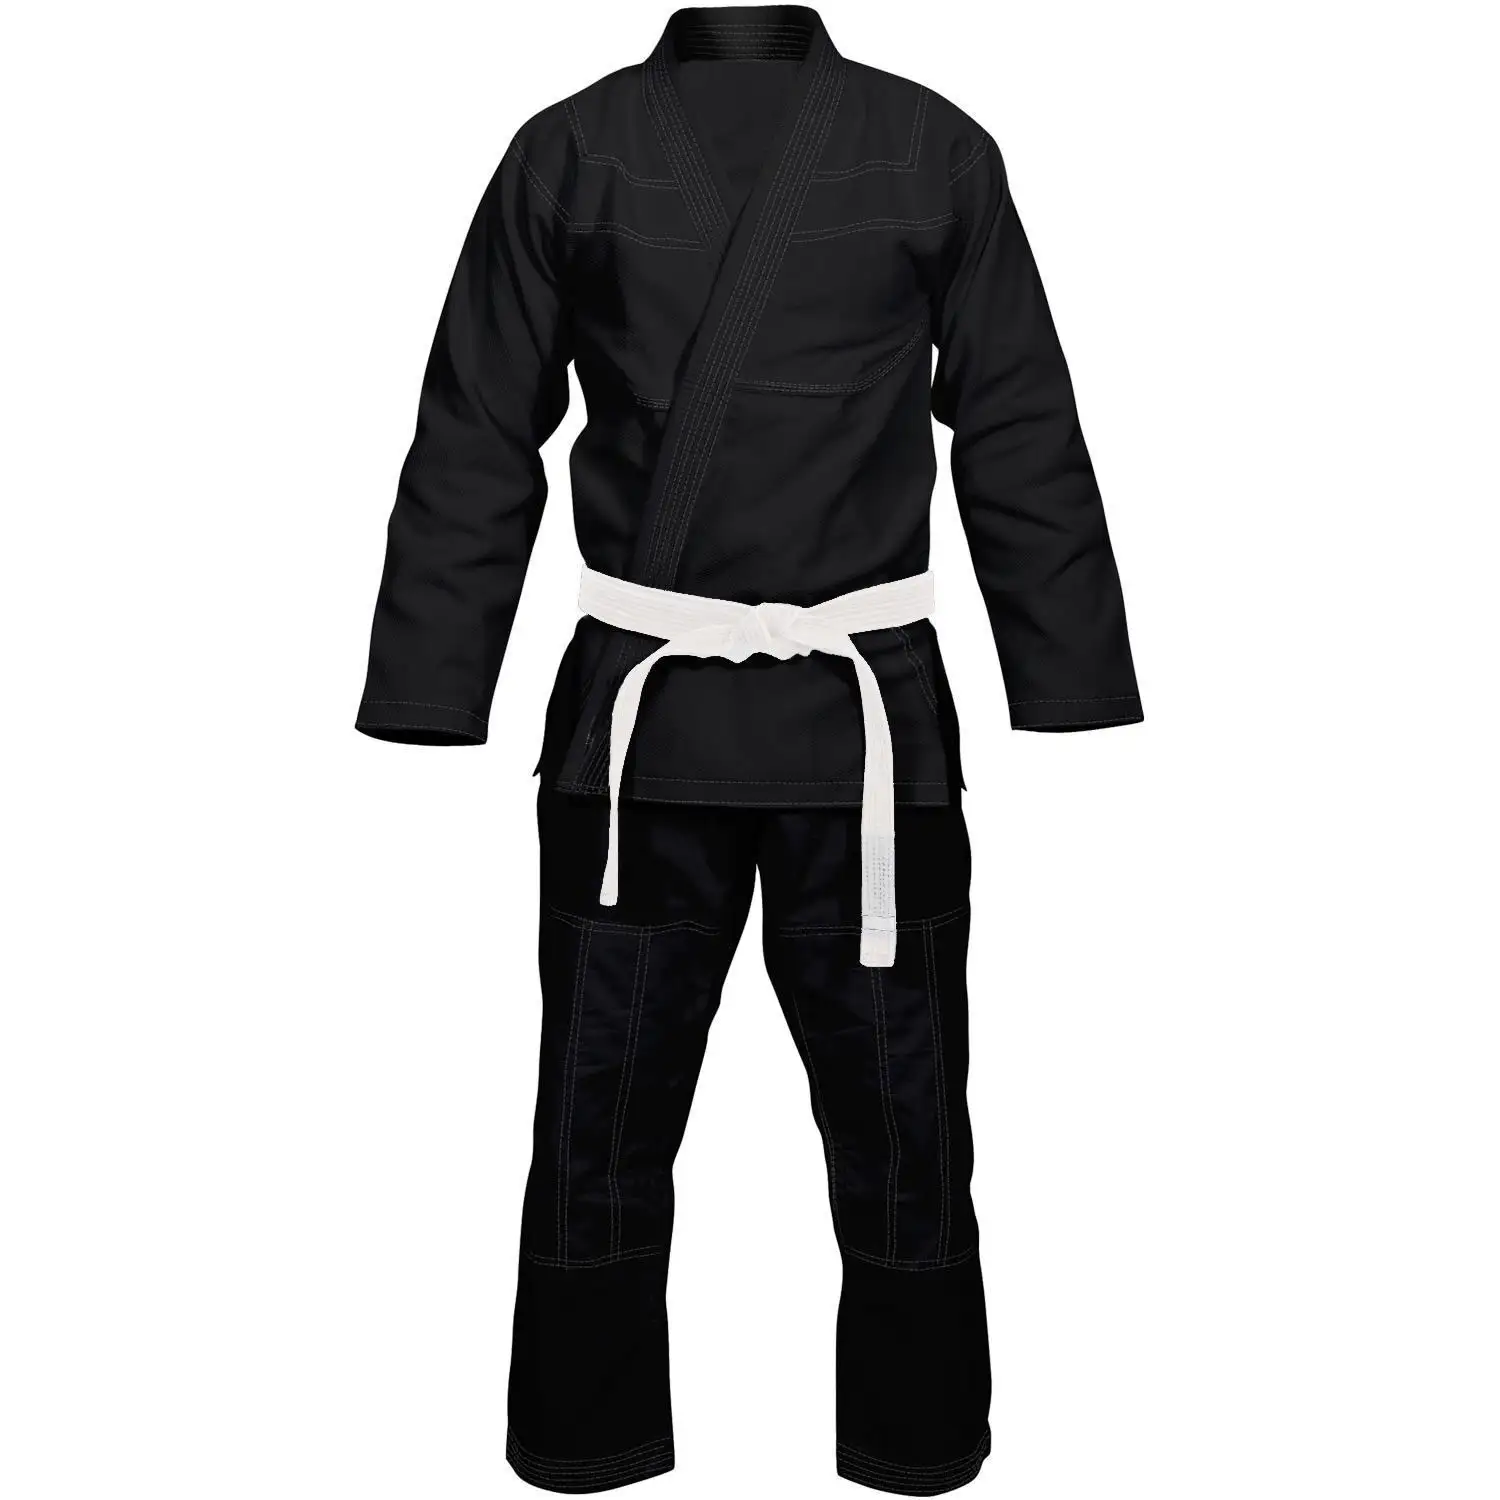 Kampf & Training Bjj Gi Brasilia nische Jiu Jitsu Uniform Maßge schneiderte Kampfkunst Bjj Judo Karate Uniform Kimono Jiu-Jitsu